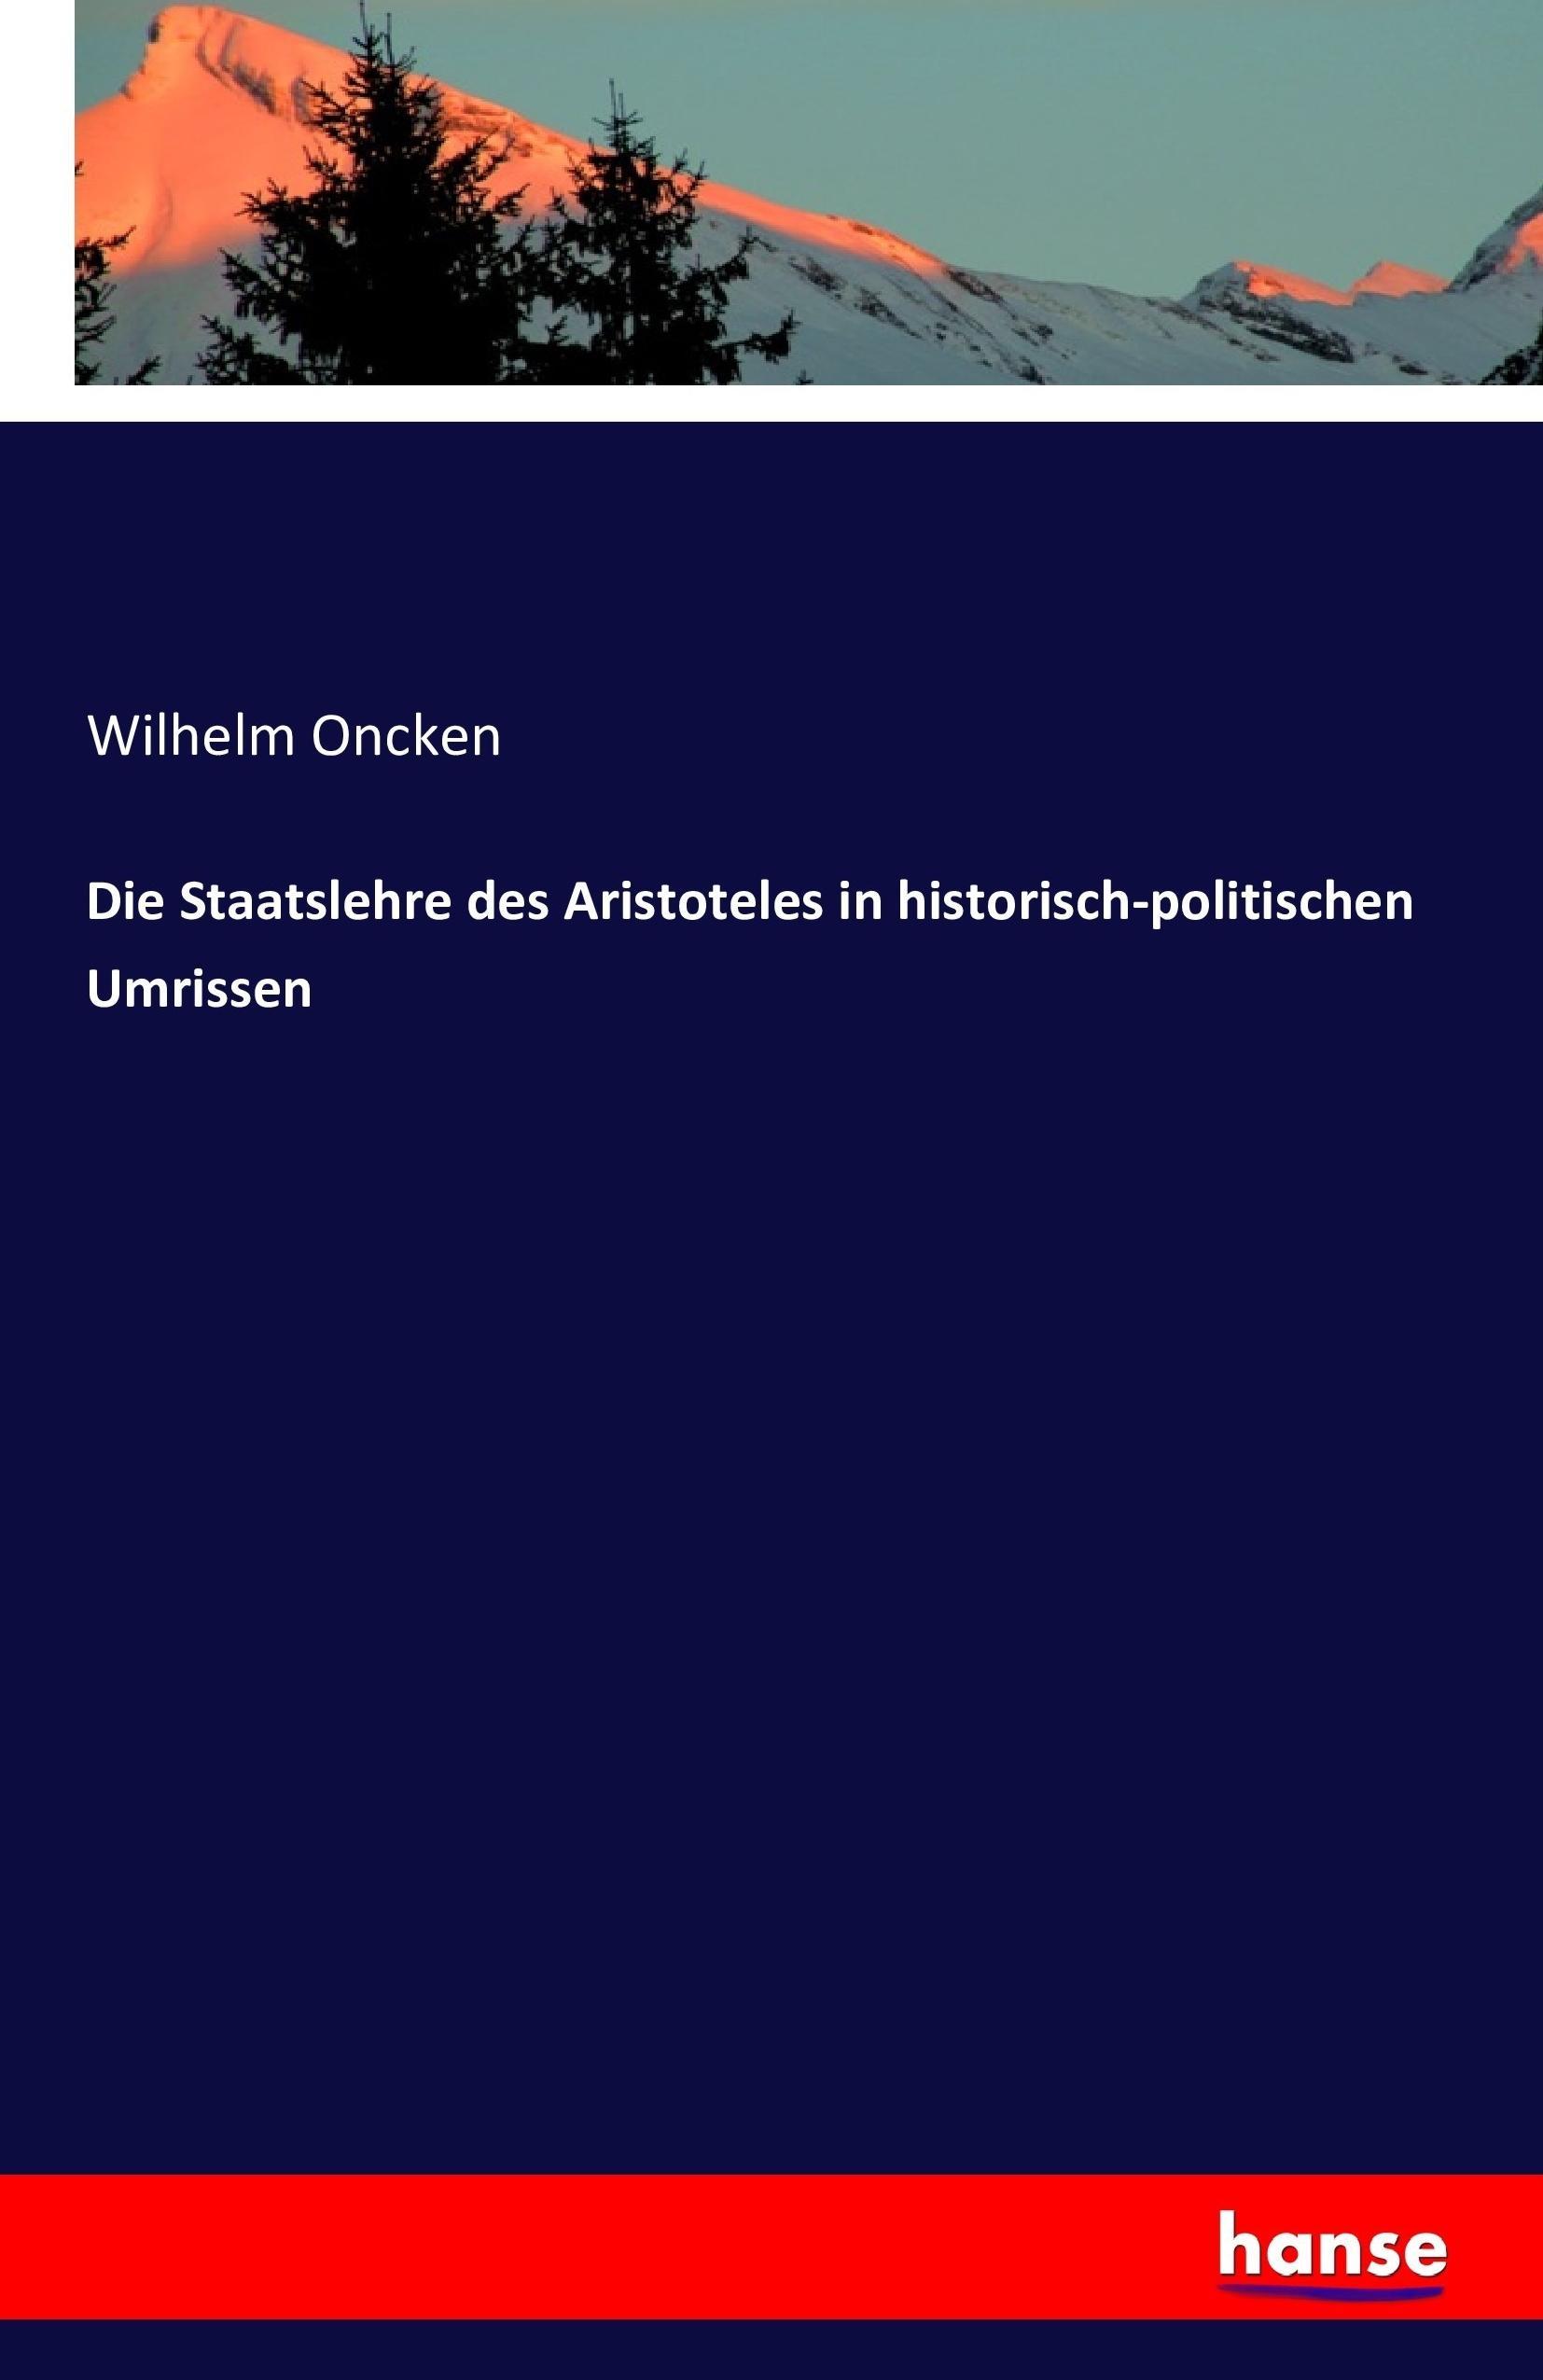 Die Staatslehre des Aristoteles in historisch-politischen Umrissen - Oncken, Wilhelm